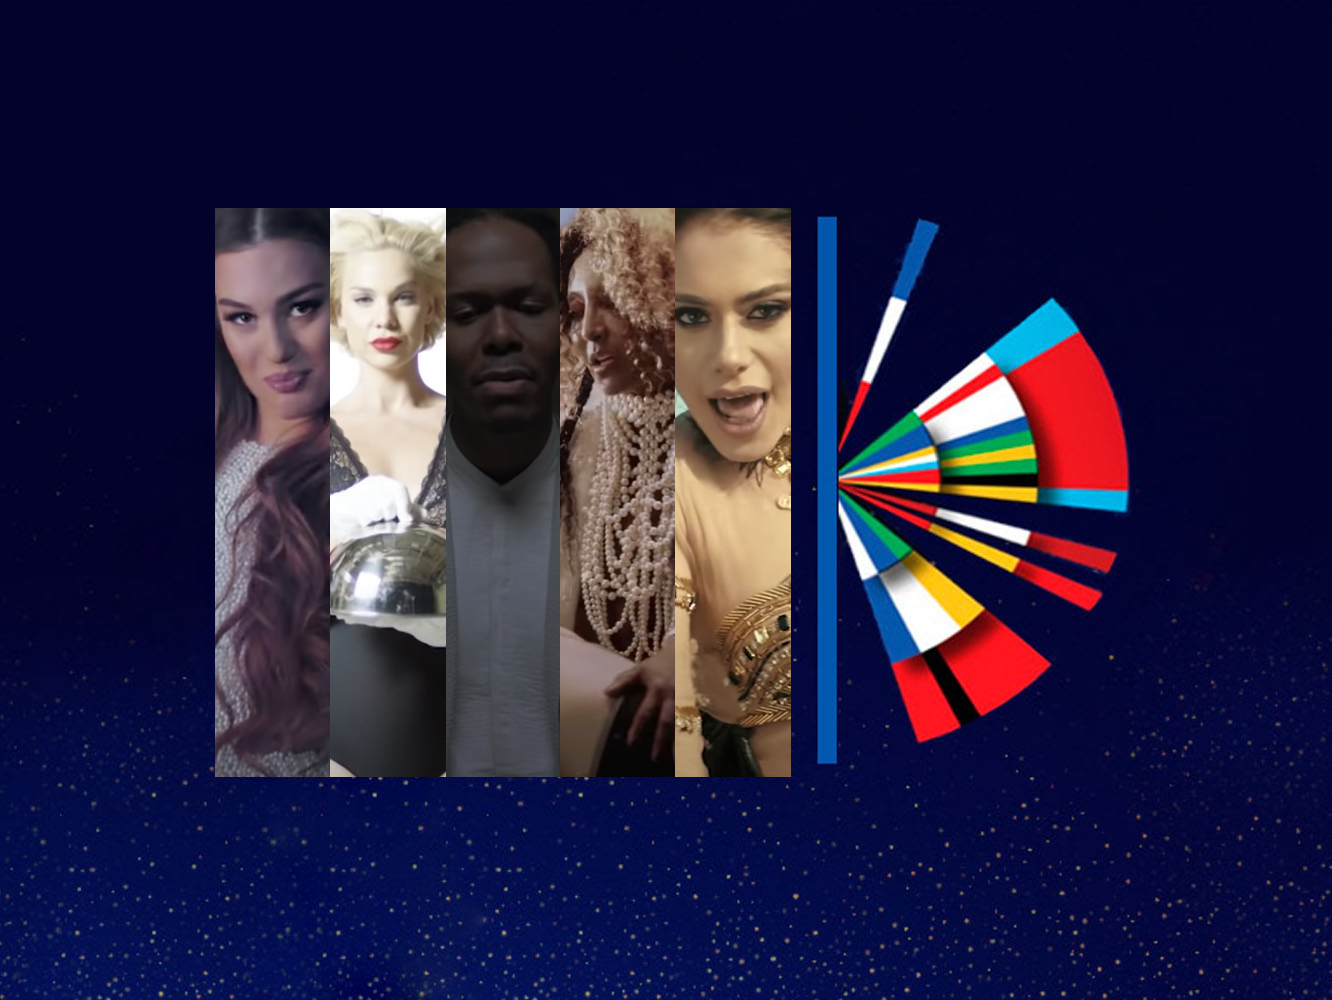  Eurovisión 2020: las canciones de Armenia, Letonia, Países Bajos, San Marino y Azerbaiyán